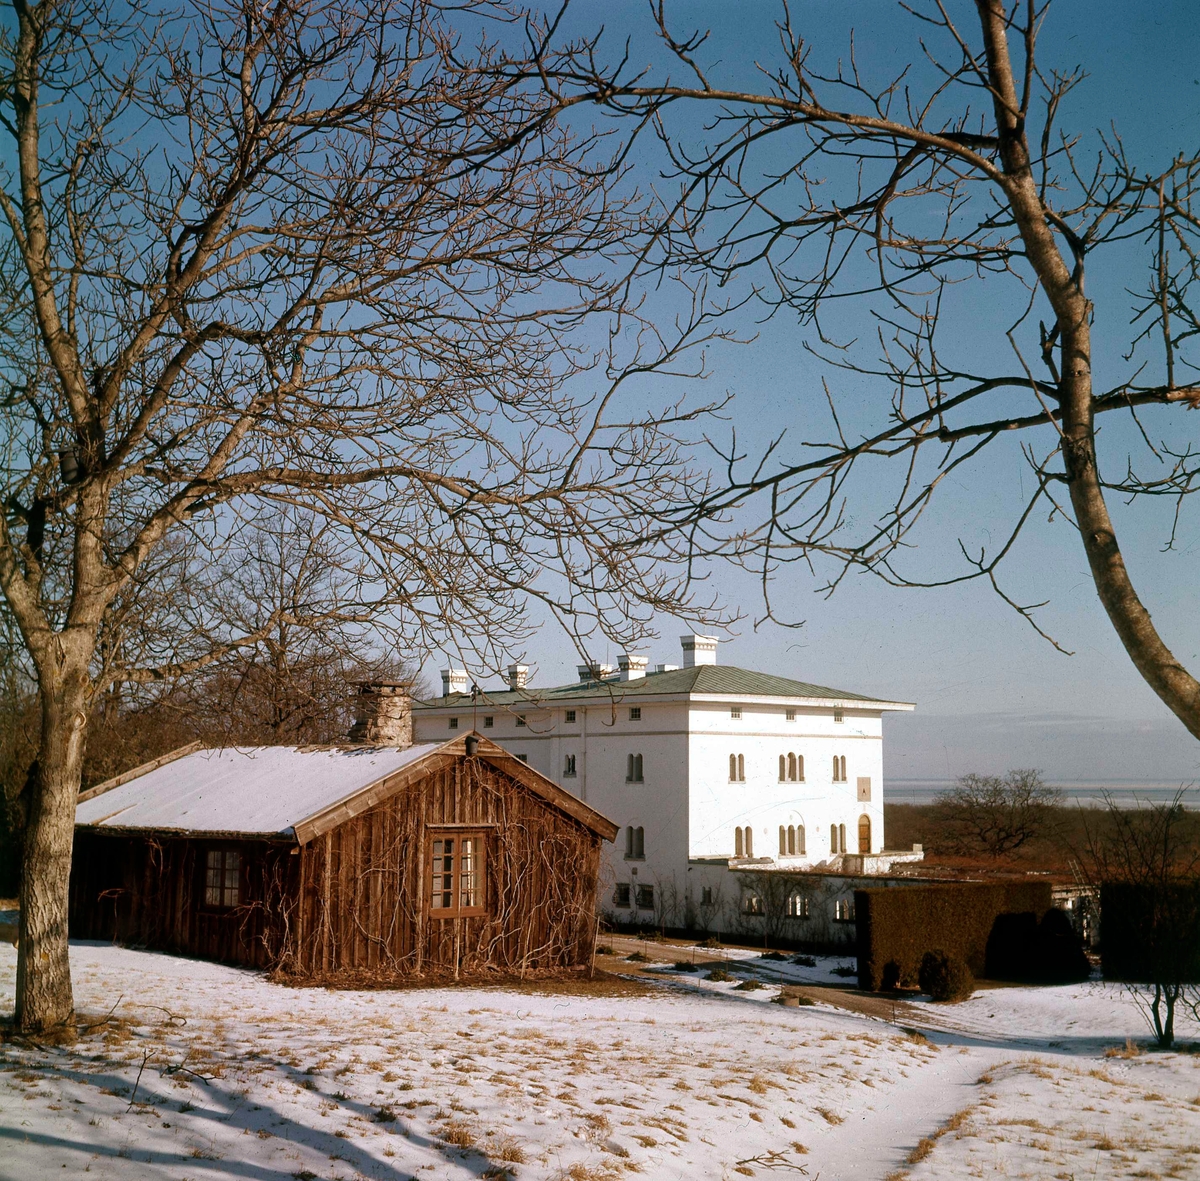 Solliden är en svensk slottsliknande villa på Öland. Den är svenska kungafamiljens sommarbostad och kung Carl XVI Gustafs privata egendom. Solliden är belägen i Räpplinge socken, nära Borgholms slottsruin och stod färdigt 1906.